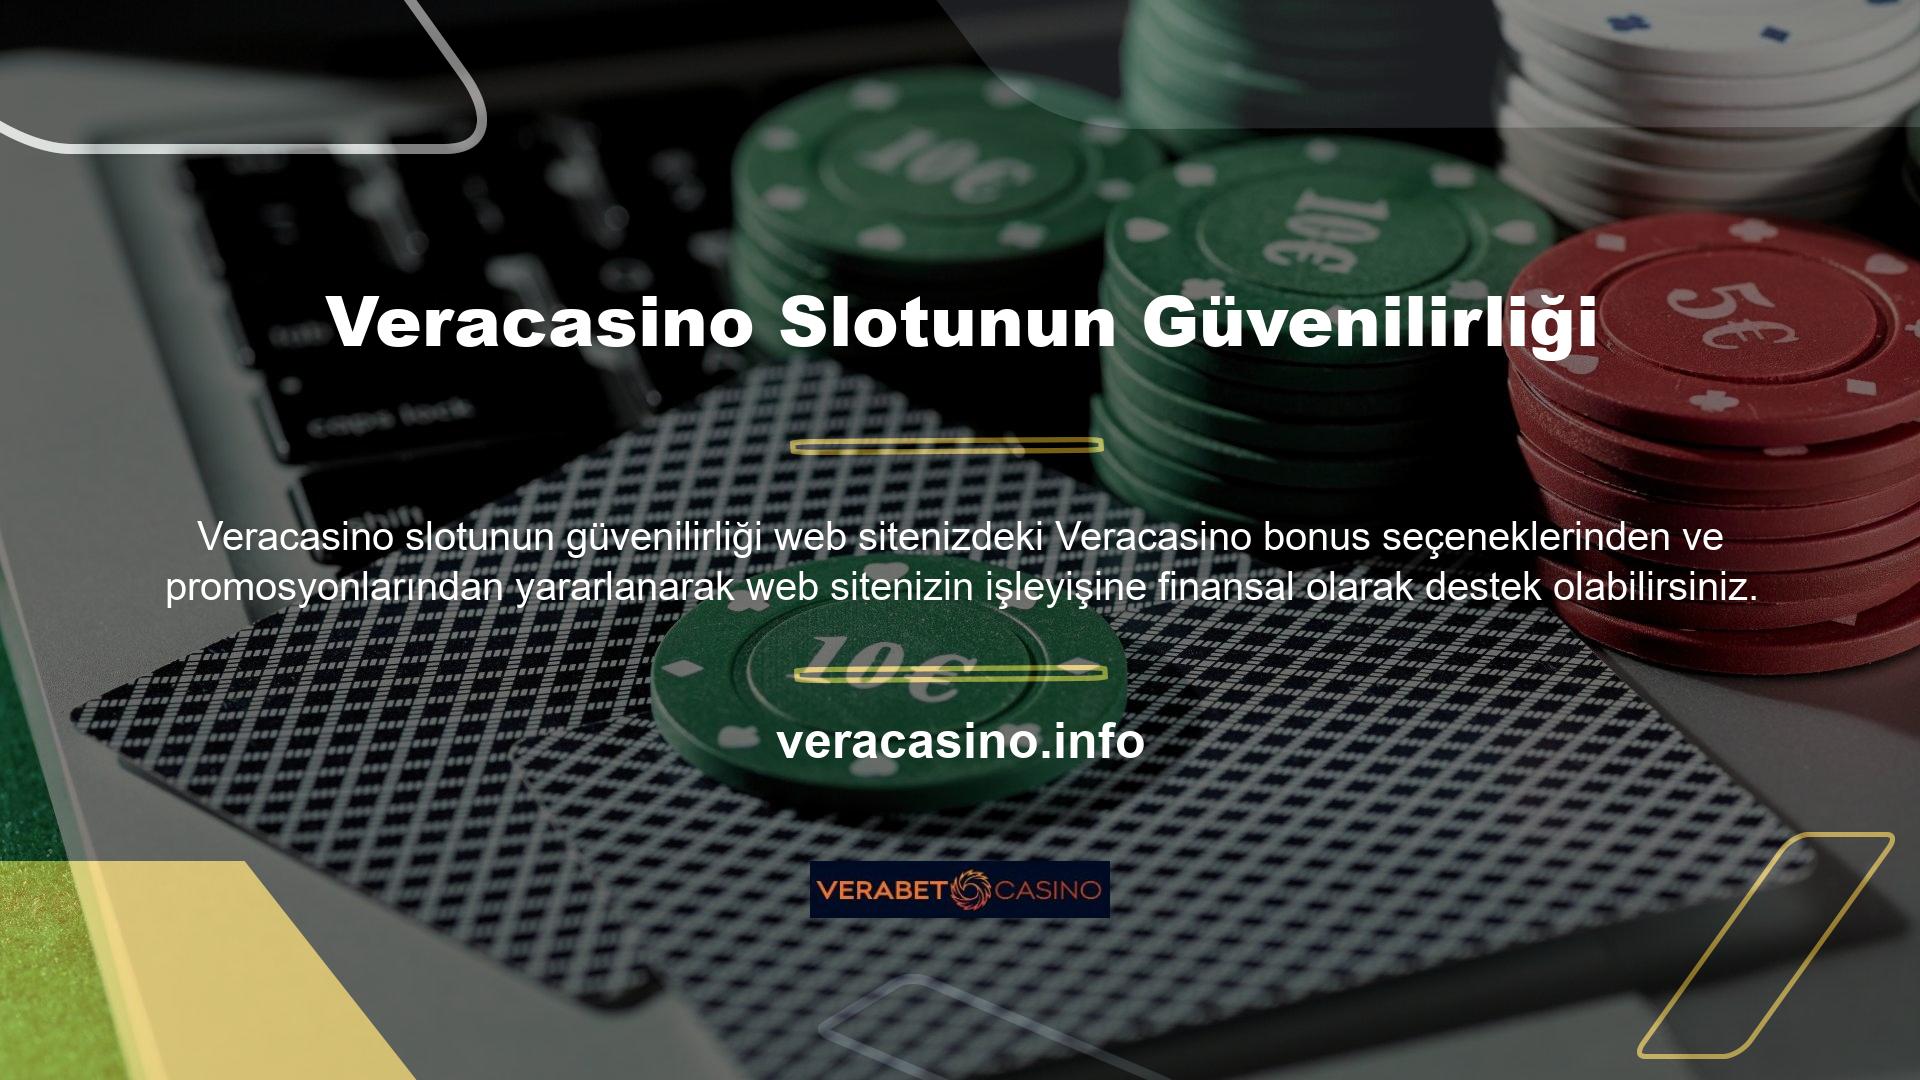 Veracasino web sitesi aktif olarak çevrimiçi Veracasino endüstrisine hizmet vermektedir